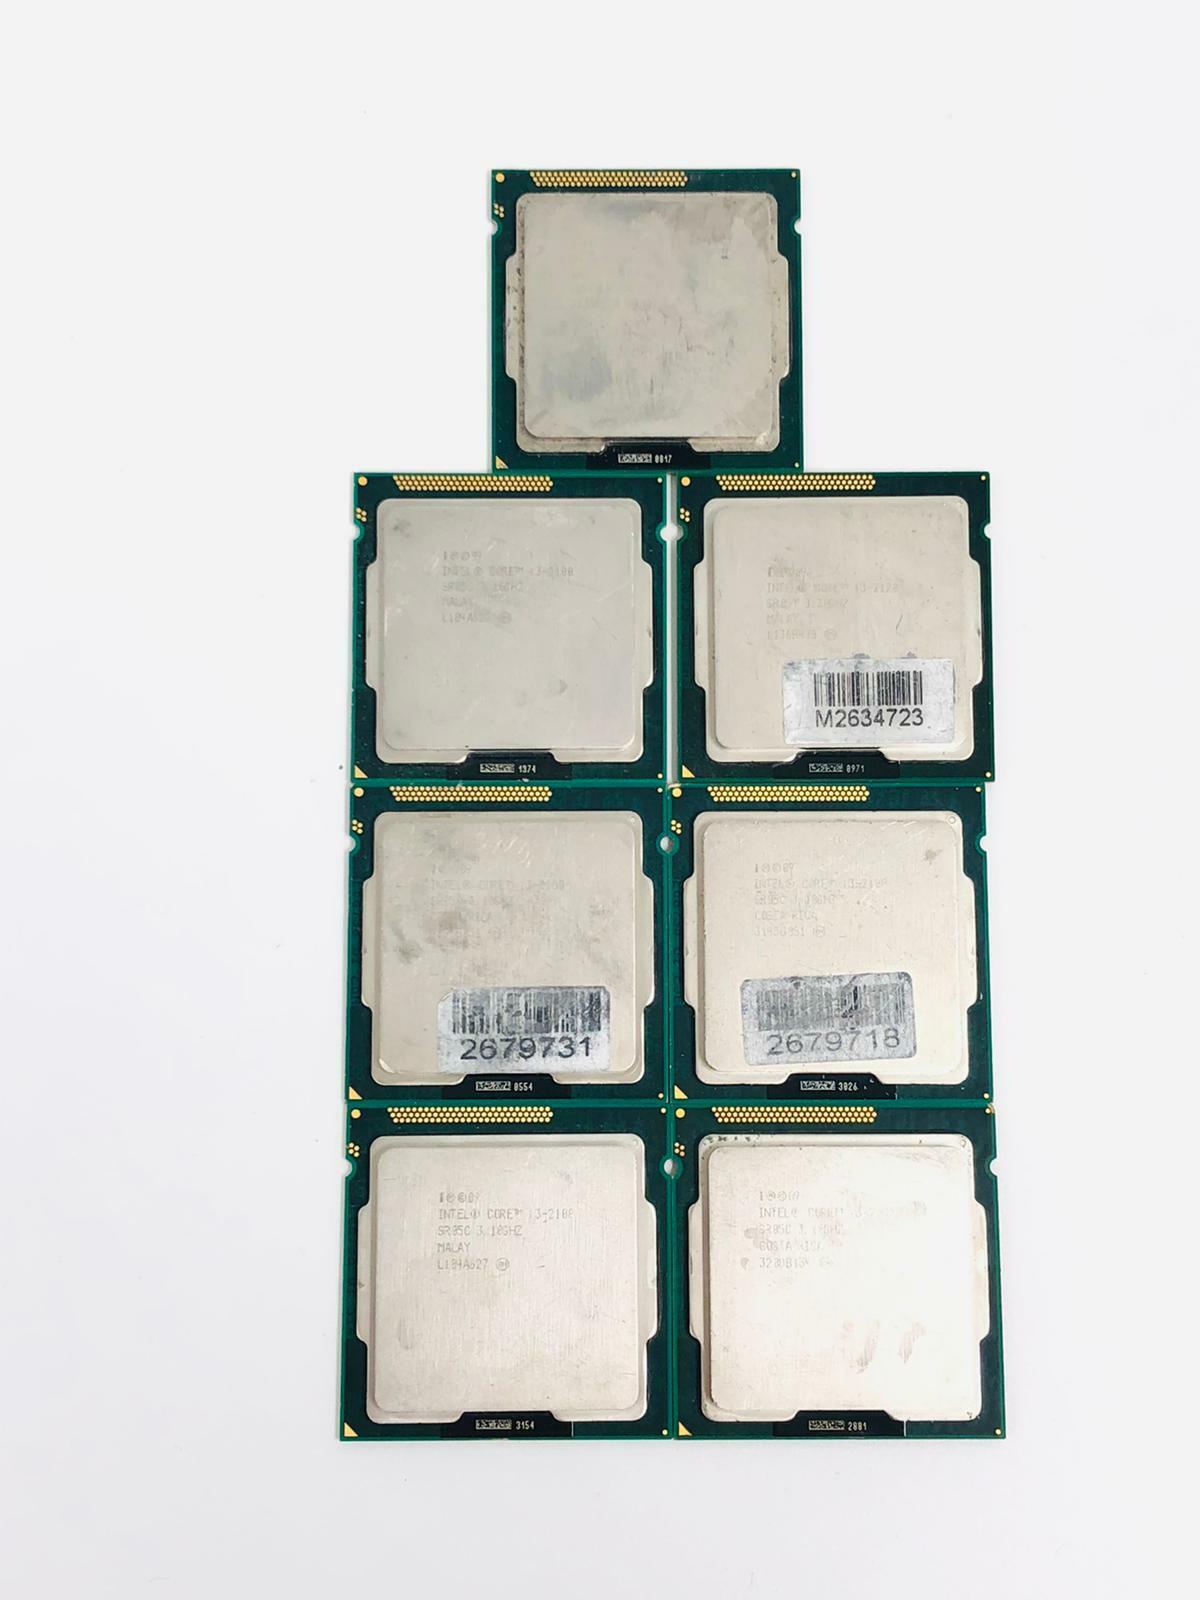 LOT OF 7 - Intel Core i3-2100 (SR05C) 3.1GHz LGA1155 Desktop CPU Processor